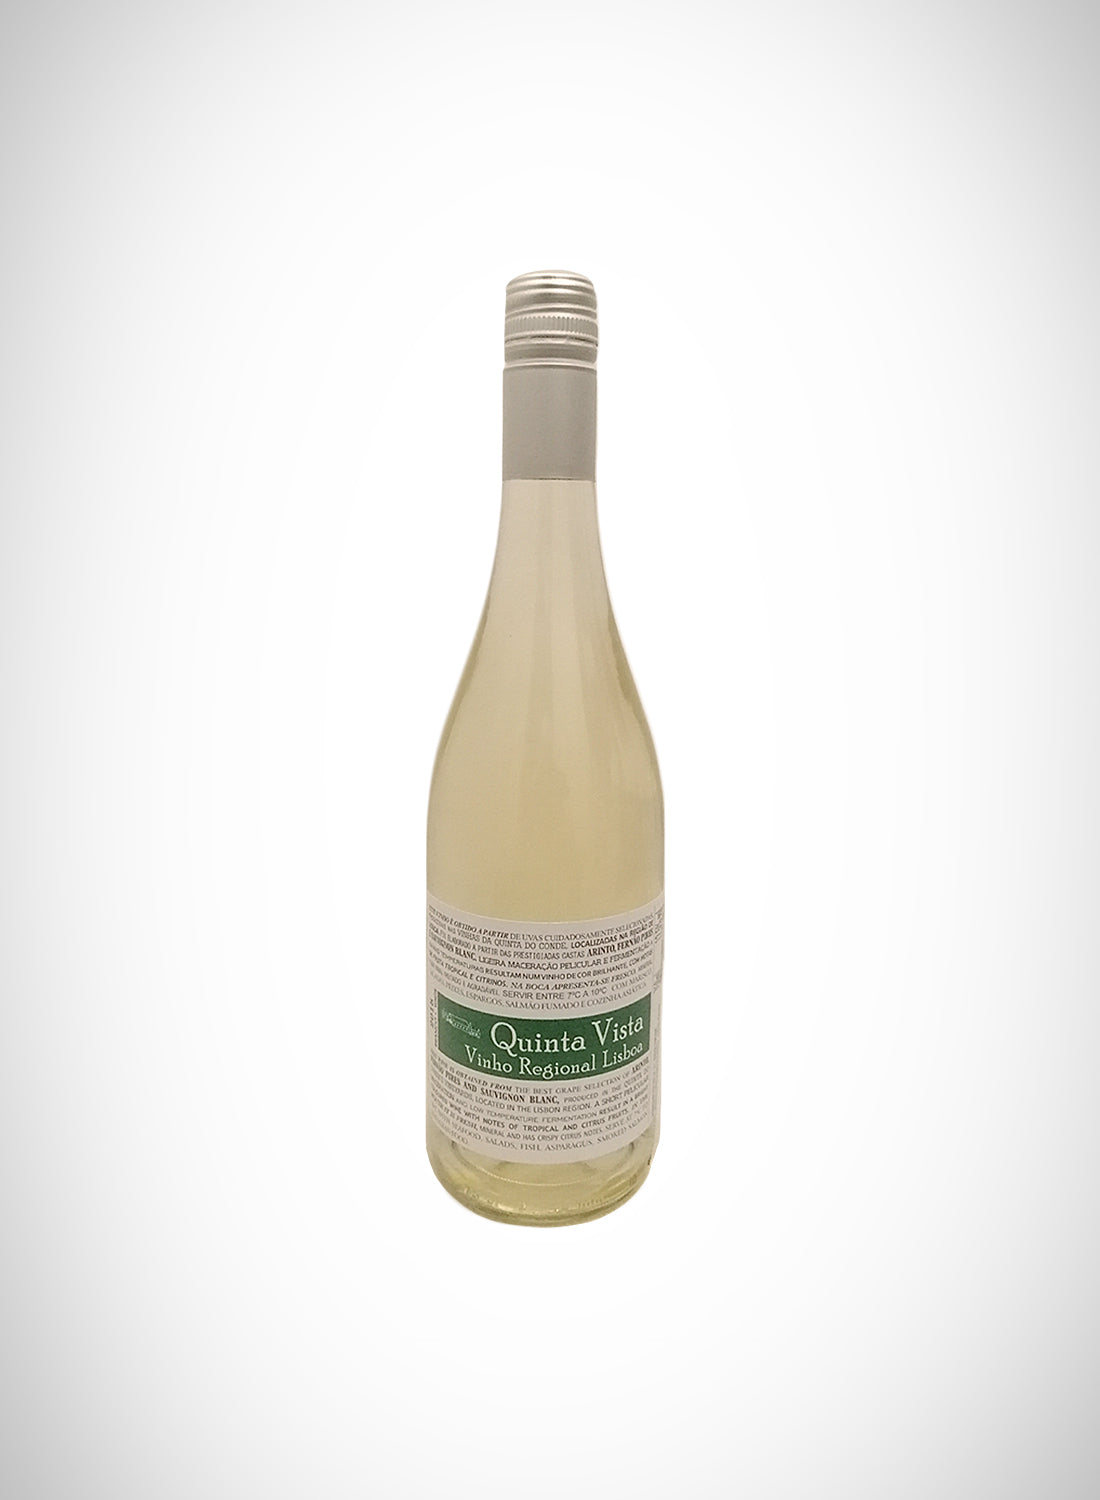 Quinta Vista Vinho Regional White